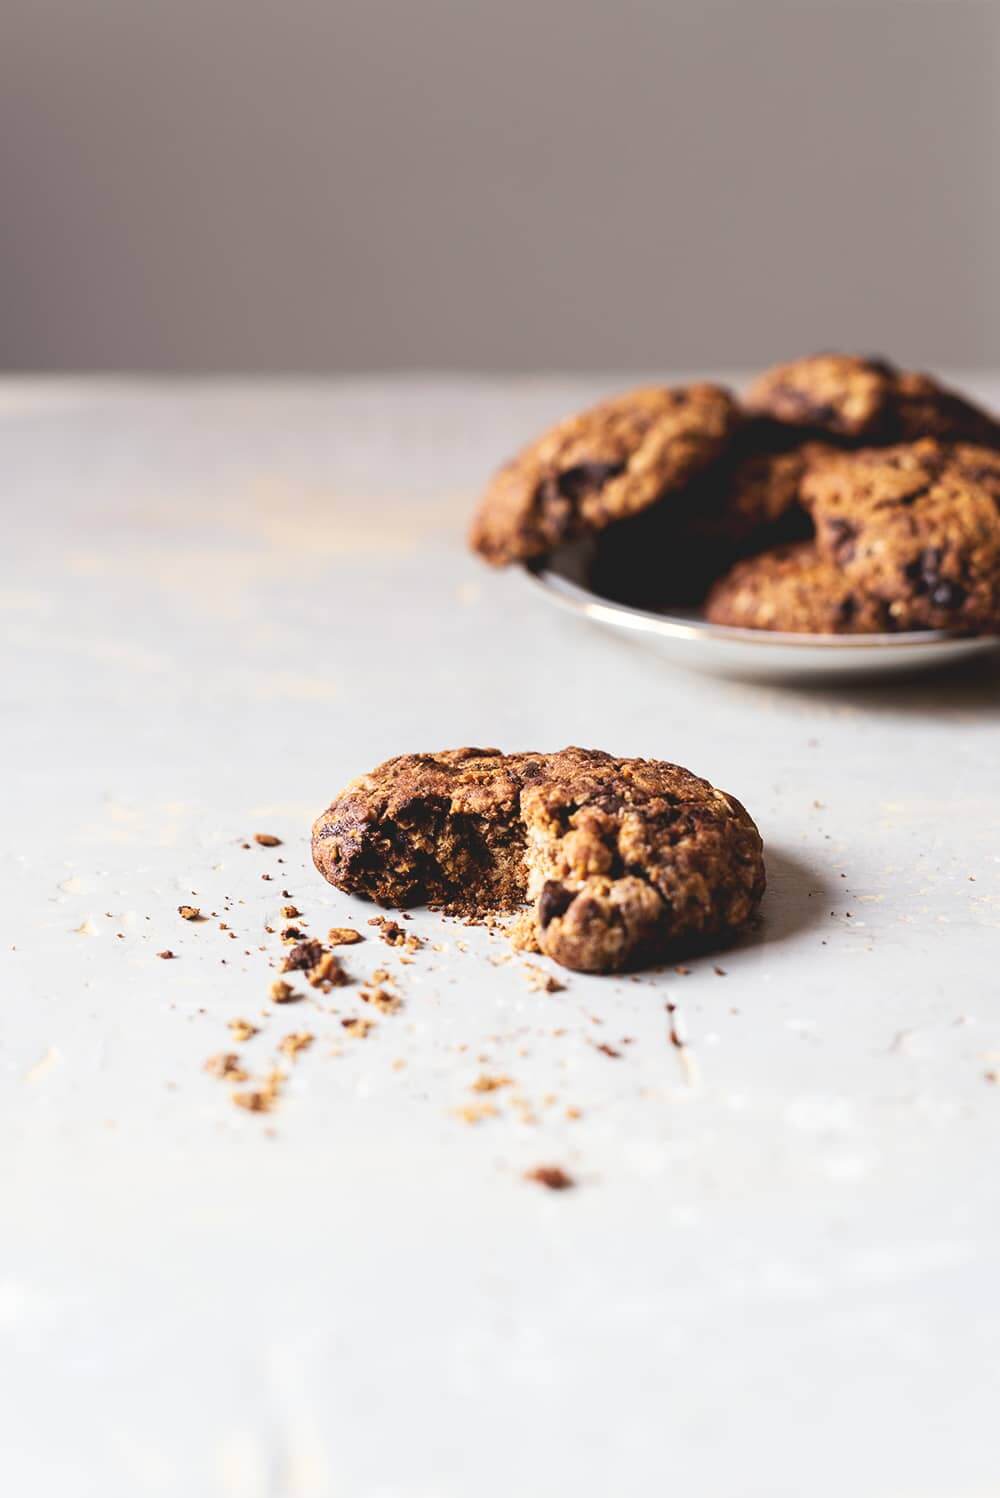 En una superficie gris está una galleta de galleta de avena mordida. Detrás se ve en un plato muchas galletas de avena y chocolate amontonados.